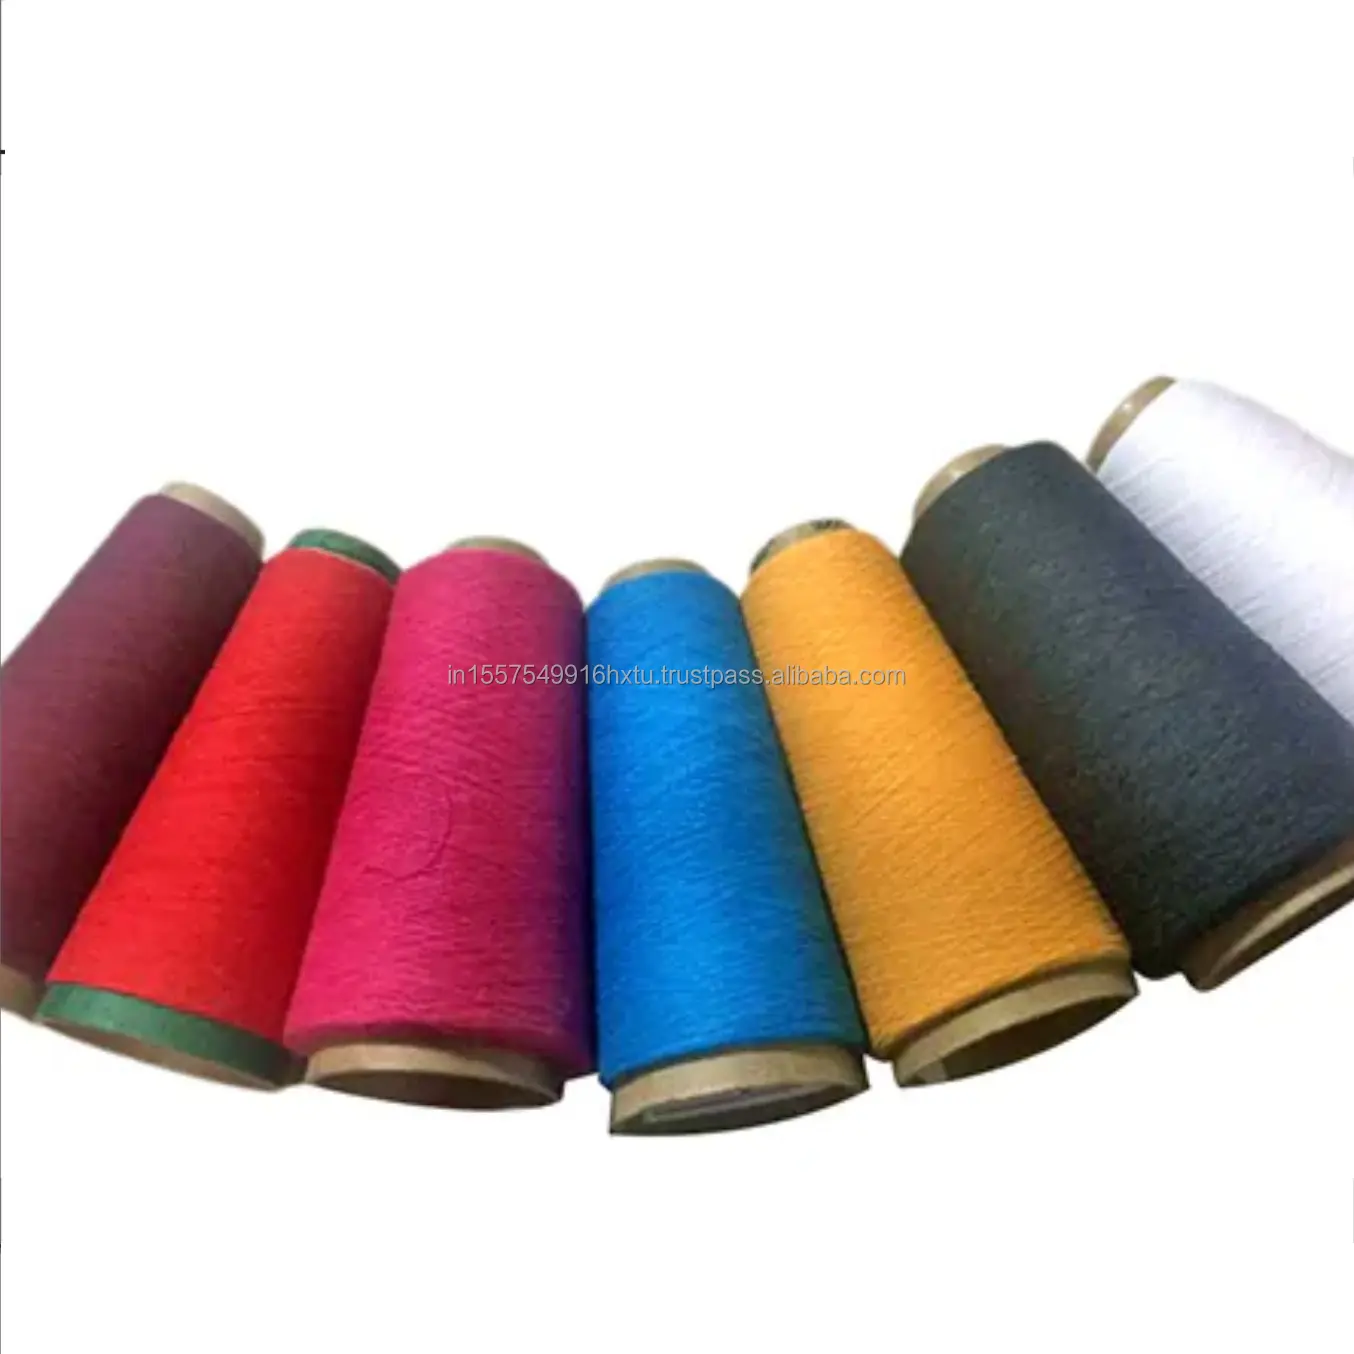 NE 16s/1 80% coton 20% Polyester fil coloré recyclé PP sac emballage avec résistance de qualité des matières premières du fil